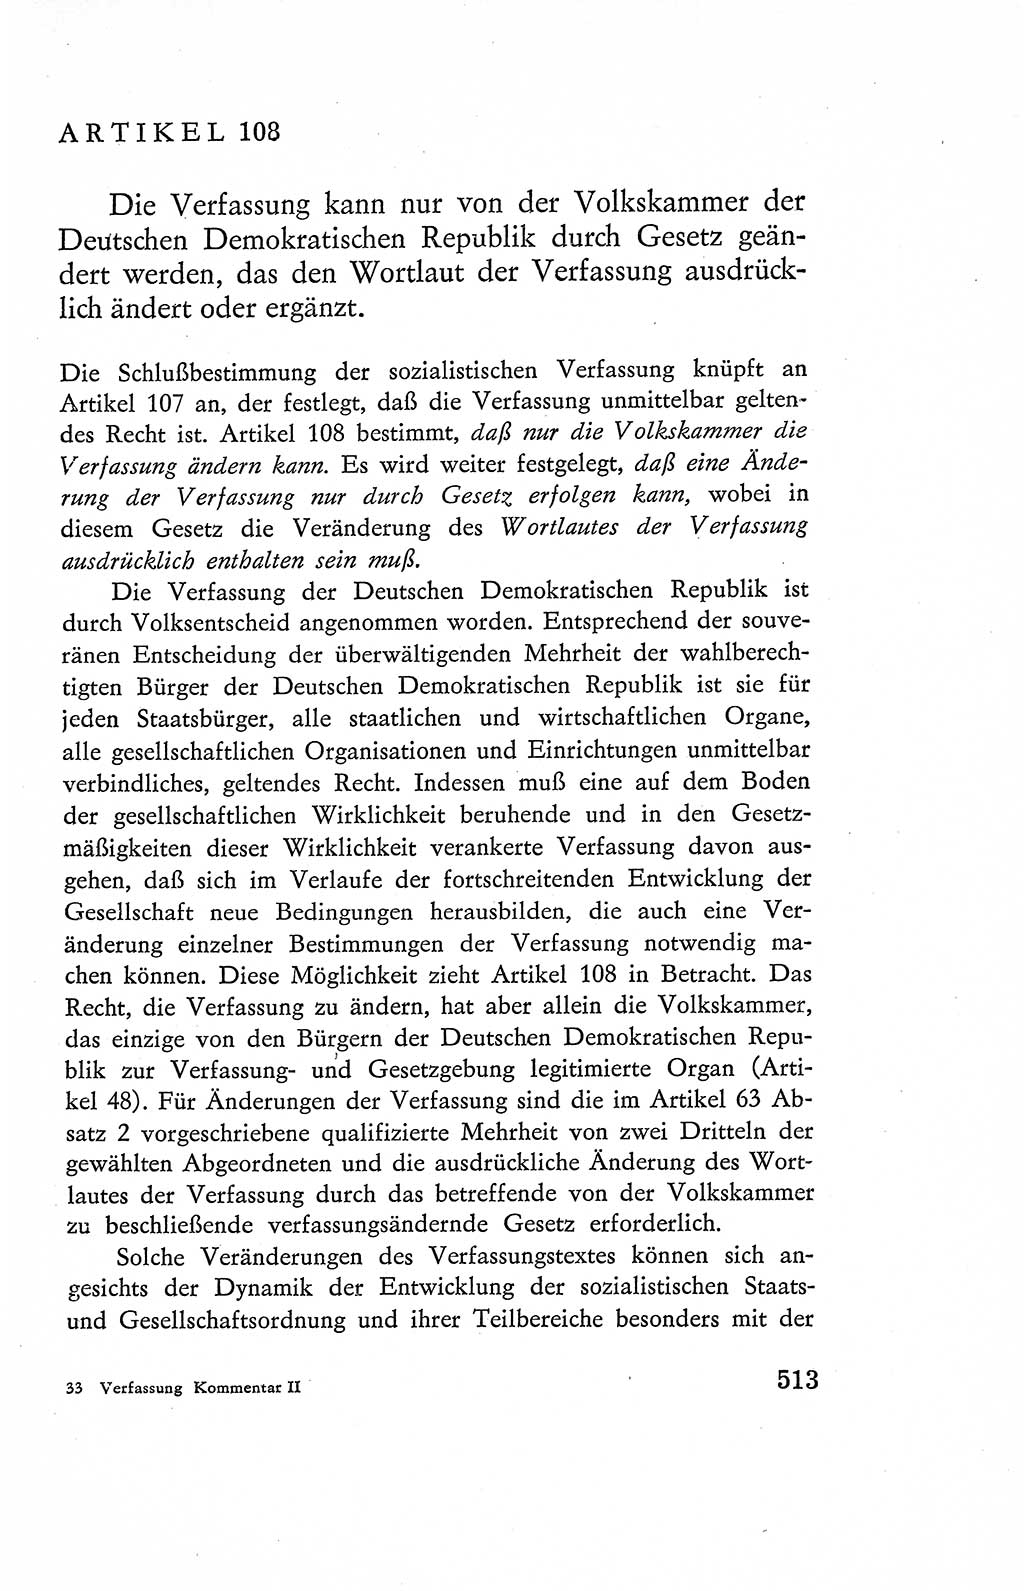 Verfassung der Deutschen Demokratischen Republik (DDR), Dokumente, Kommentar 1969, Band 2, Seite 513 (Verf. DDR Dok. Komm. 1969, Bd. 2, S. 513)